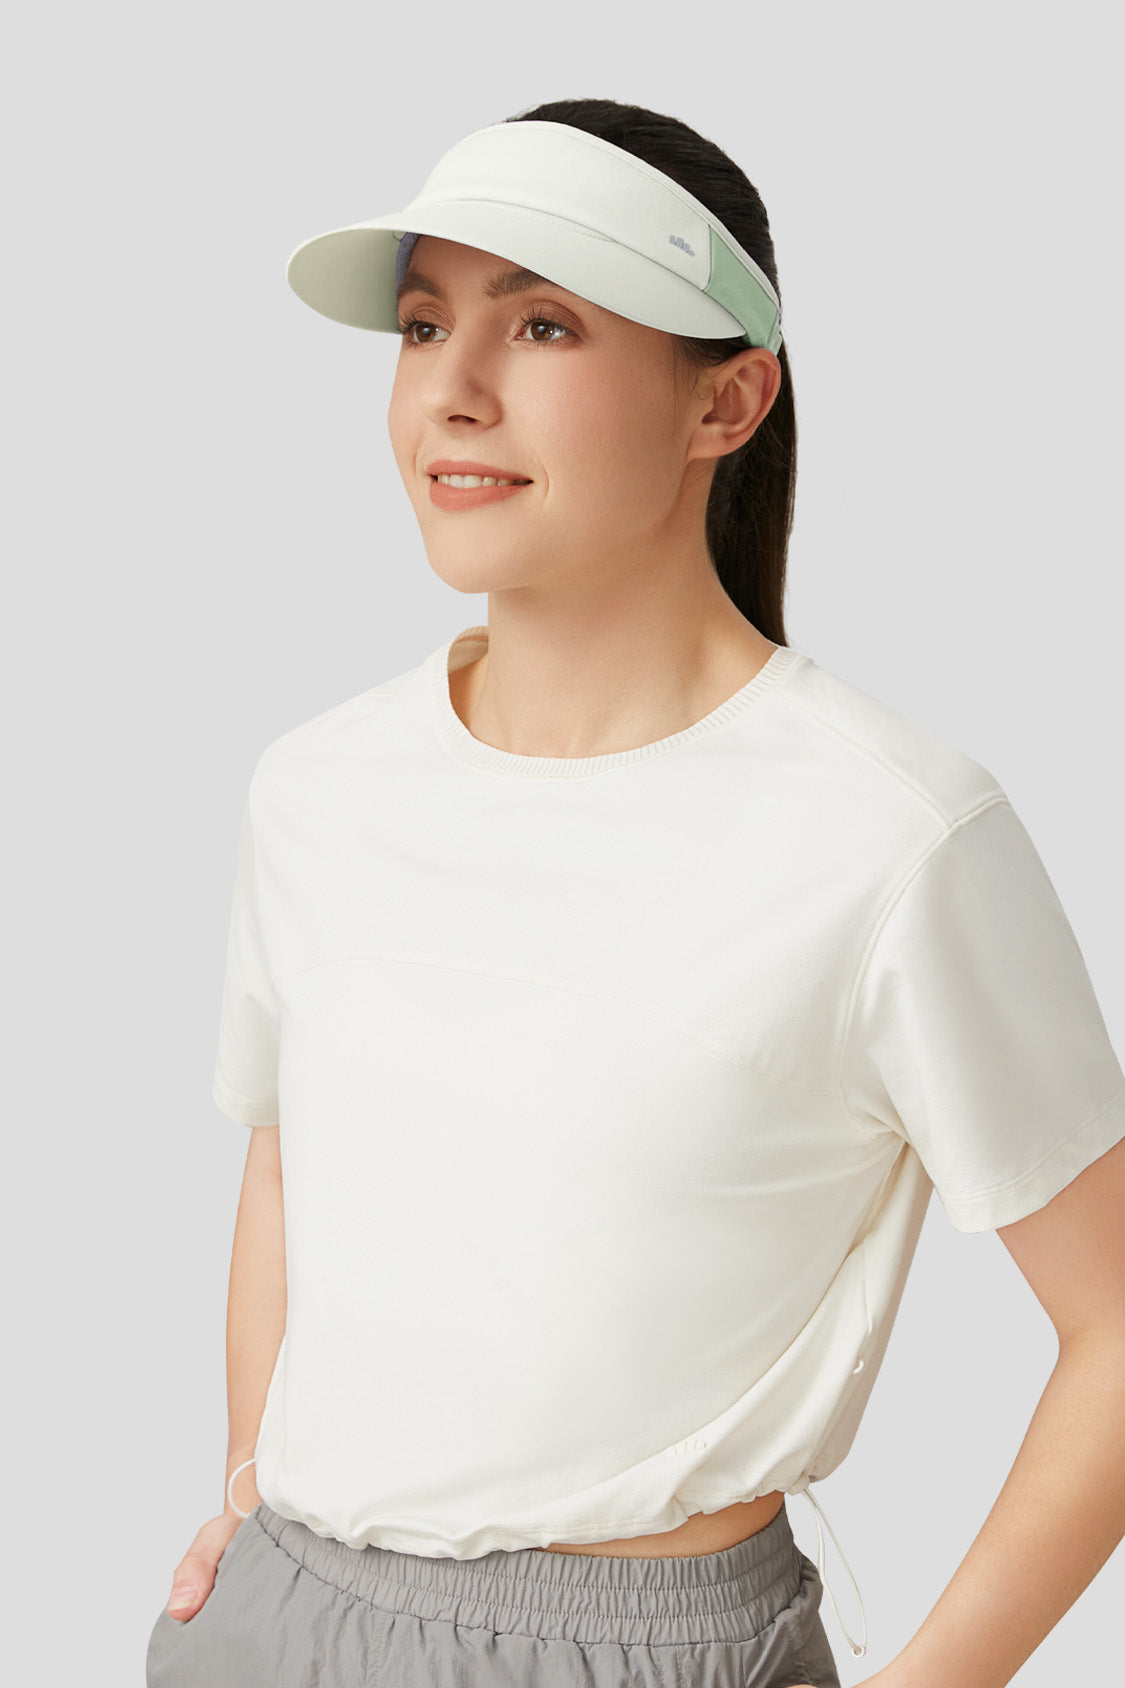 tennis hat beneunder upf50+ uv sun protection sun hat for women #color_light green